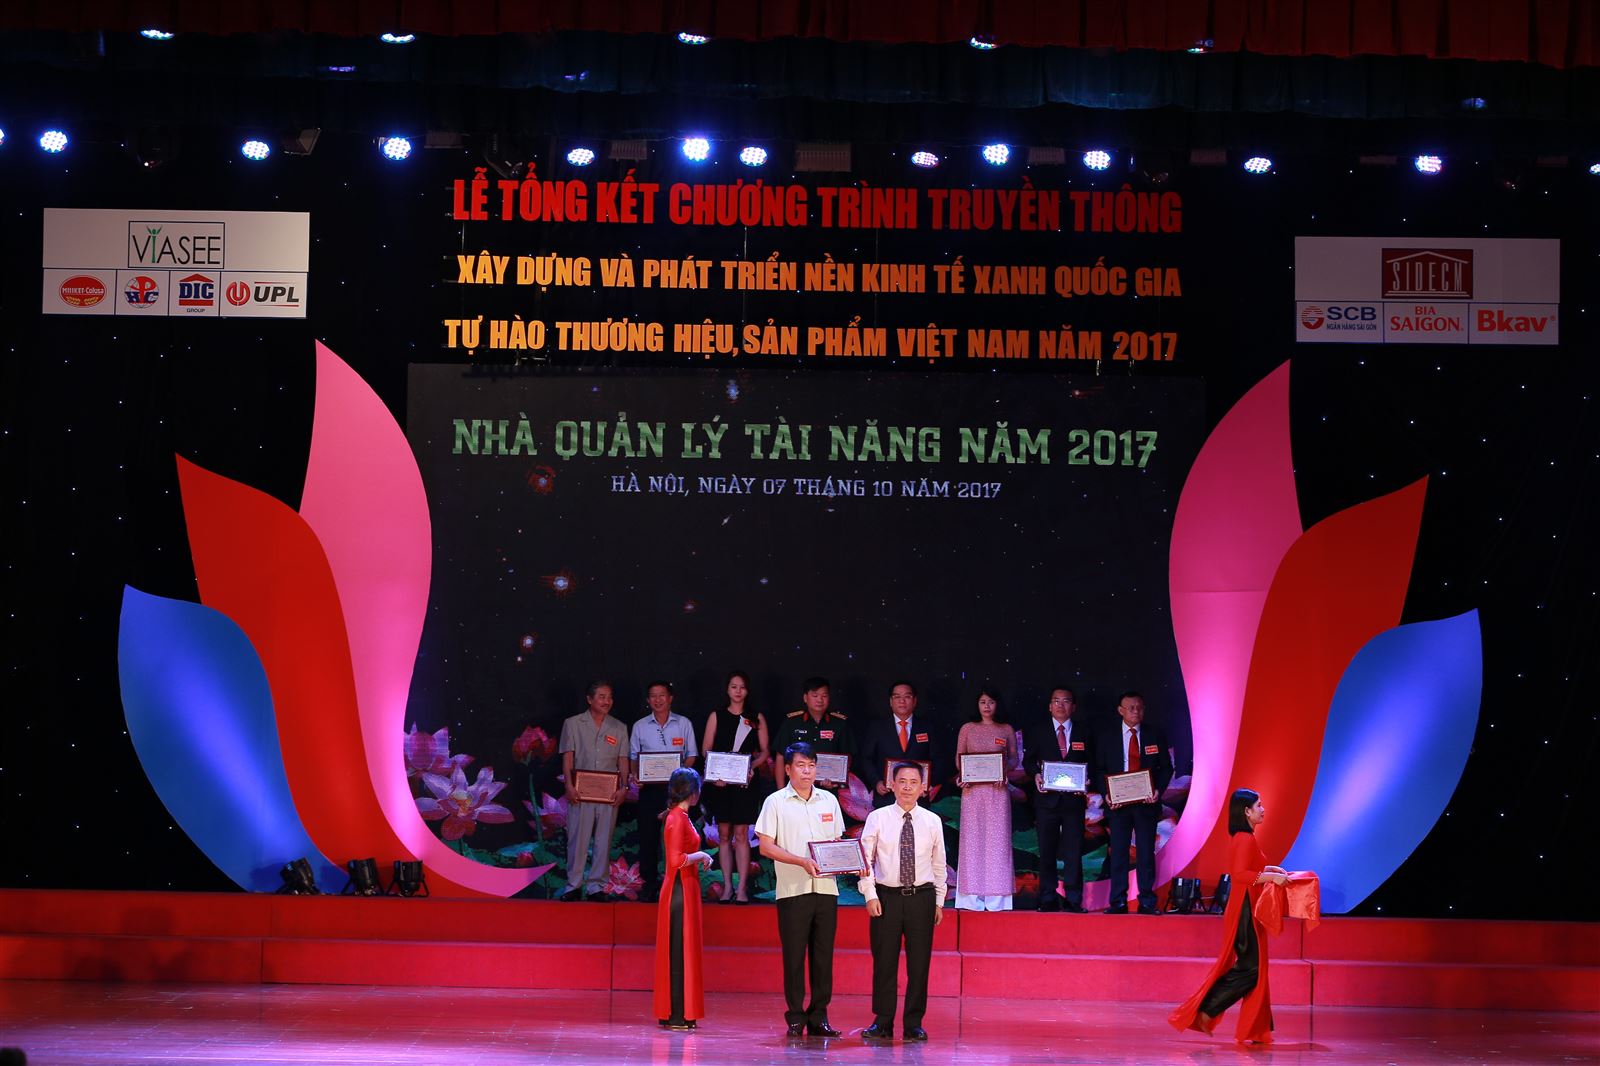 Chủ tịch Hội đồng quản trị kiêm Tổng Giám đốc Vũ Văn Trường vinh danh trong chương trình Nhà Quản lý tài năng Việt Nam 2017